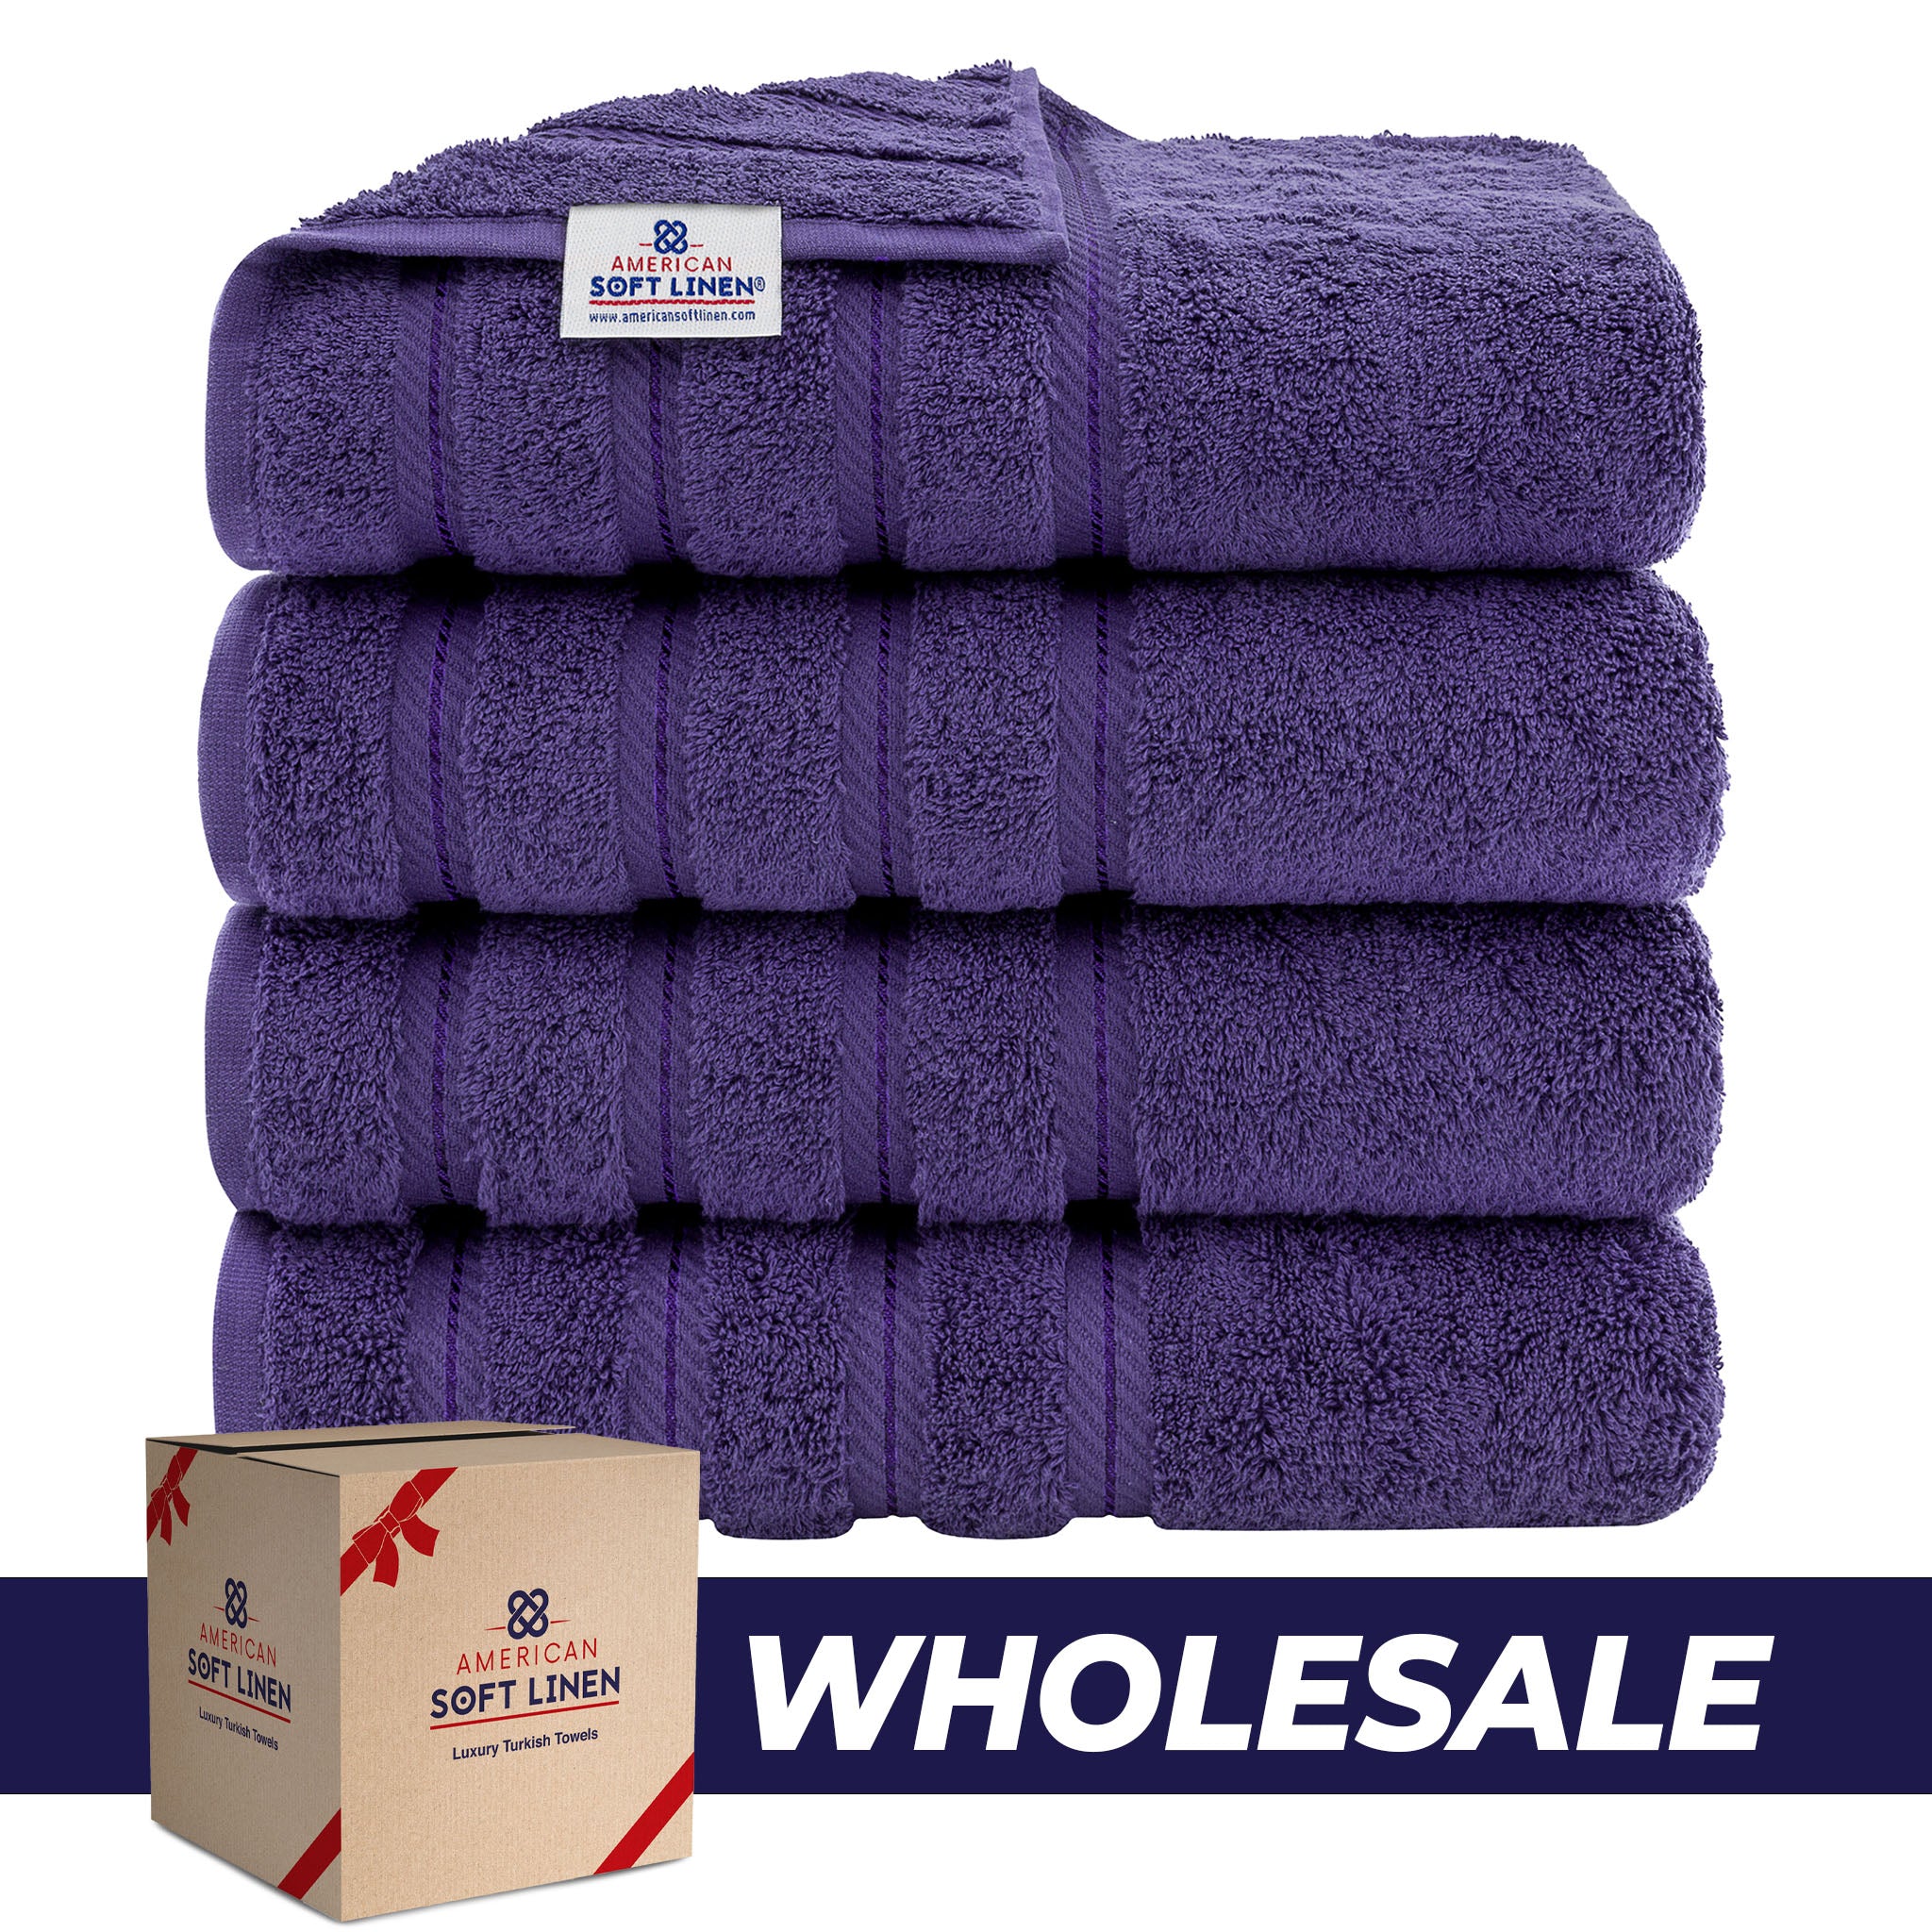 American Soft Linen 100% Turkish Cotton 4 Pack Bath Towel Set Wholesale purple-0